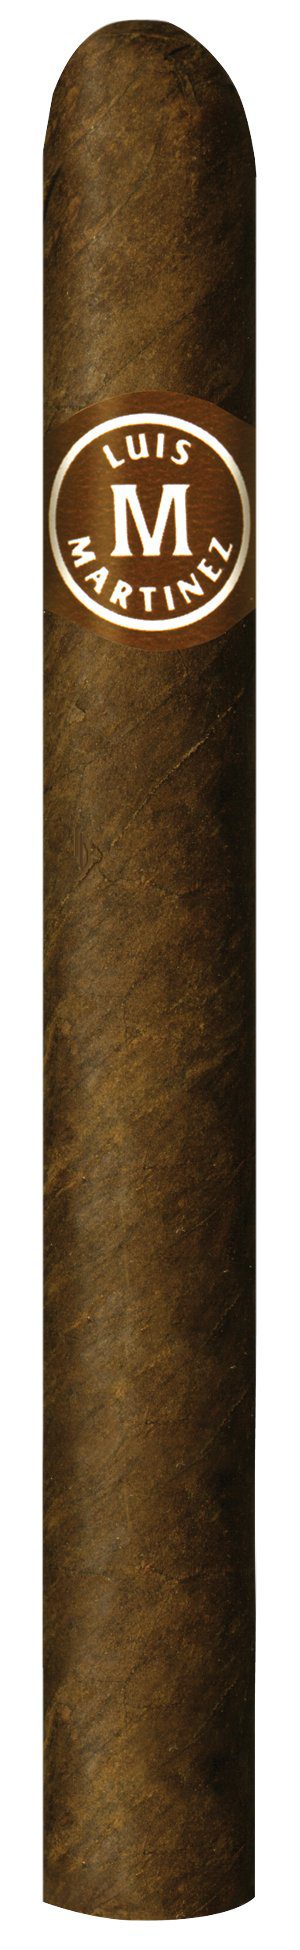 luis martinez viking cigar single